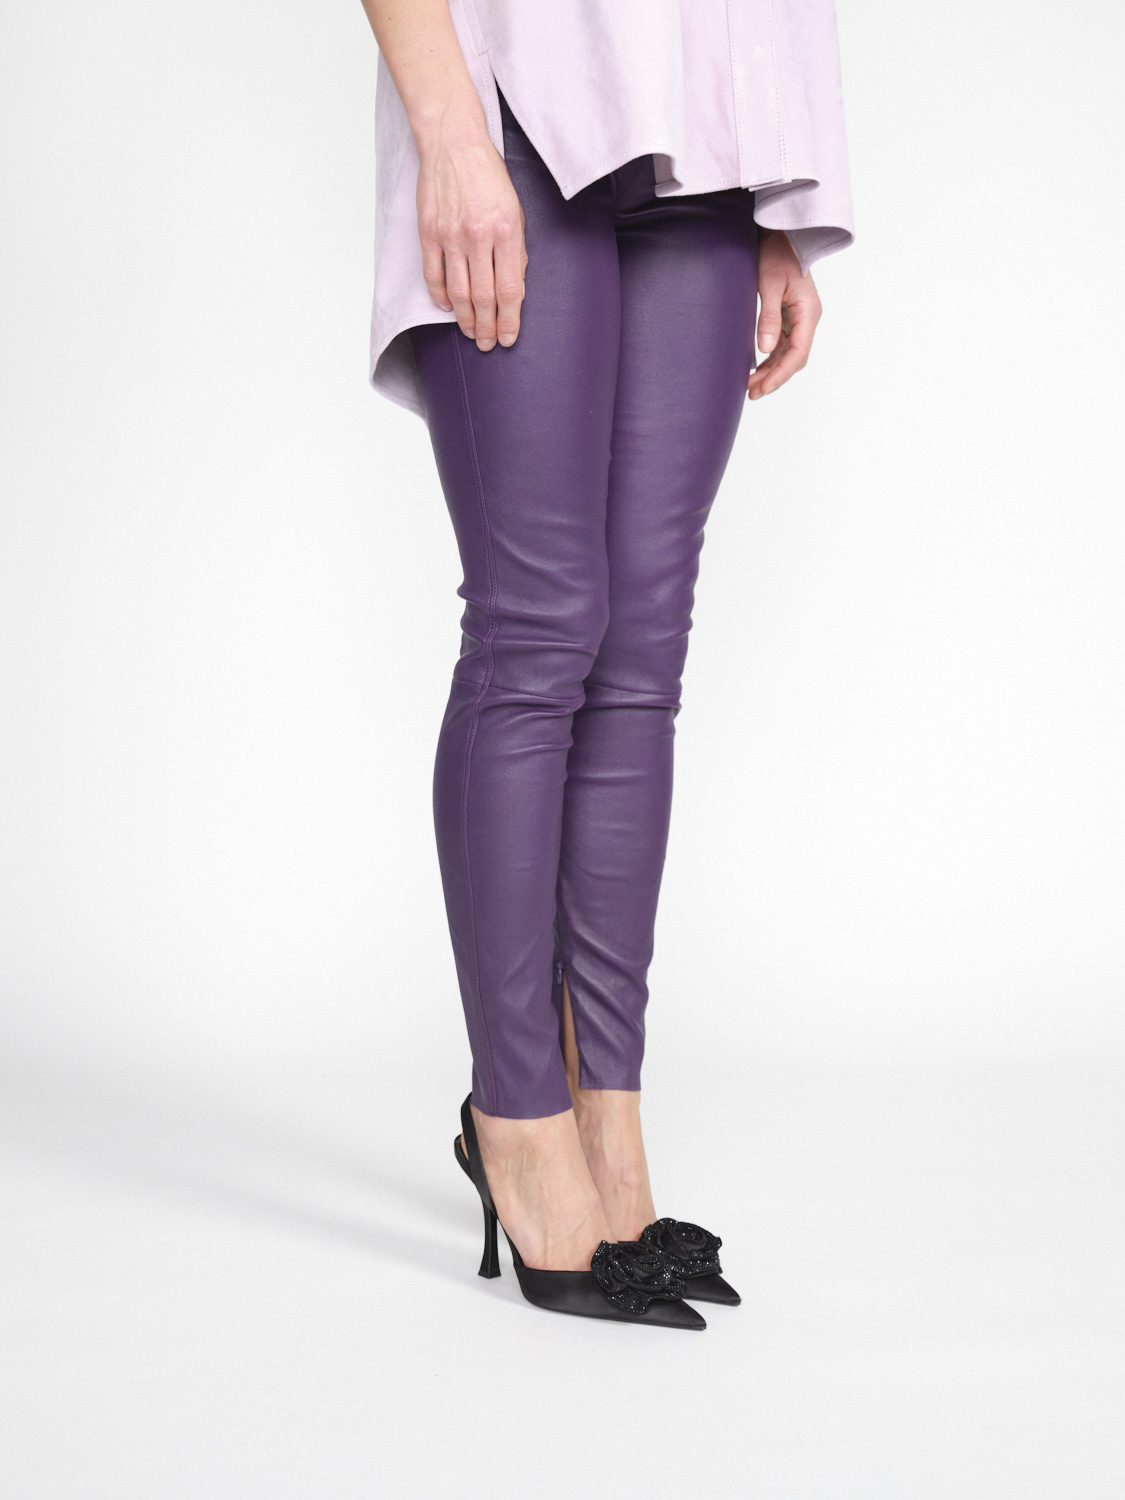 jitrois Pantalon Wynn Agneau - Pants in lamb leather purple 36